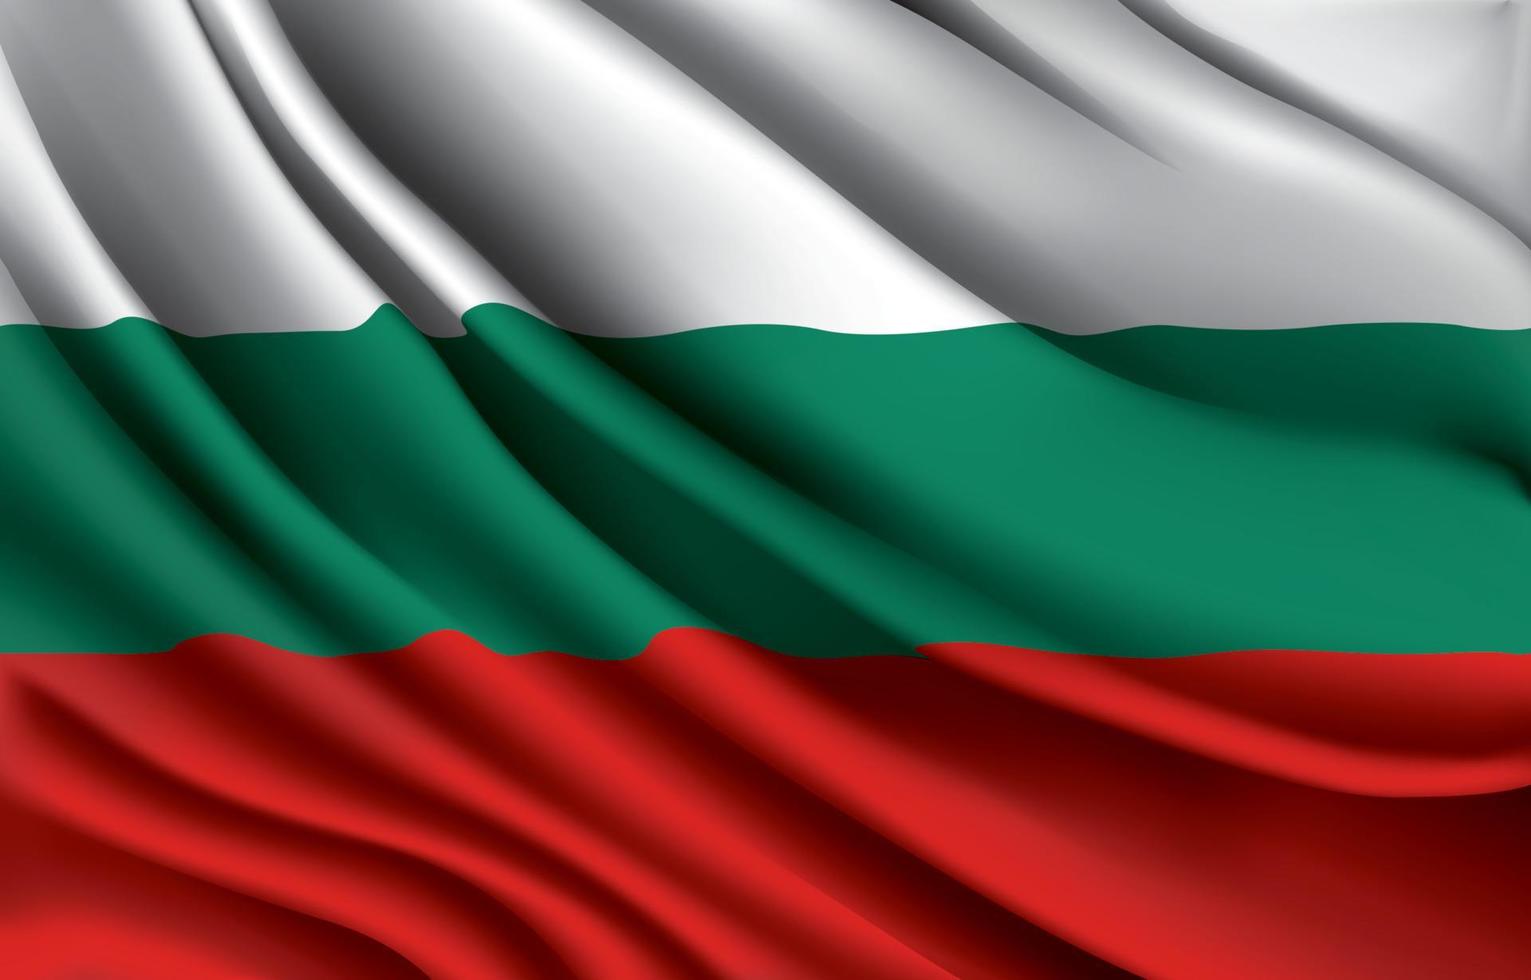 drapeau national de la bulgarie agitant une illustration vectorielle réaliste vecteur